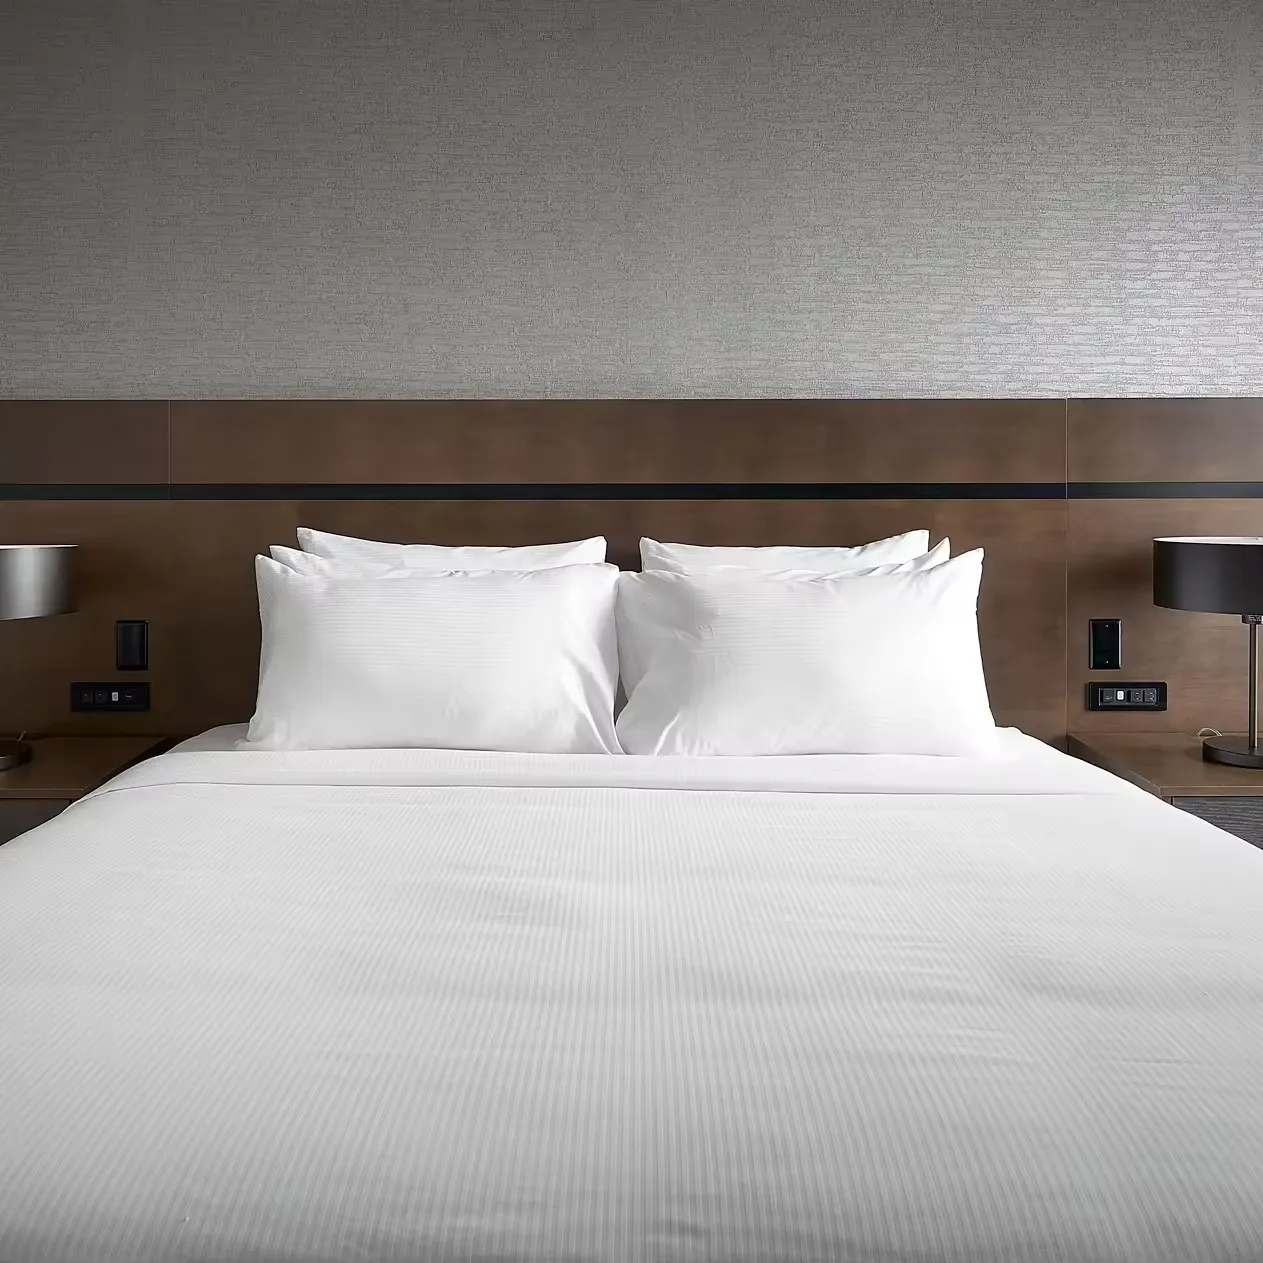 レケンホテル家具のモダンなHPLウッドベッドルームセット成功したプロジェクトダブルツリーヒルトンホテルキッチンダイニングリビングルーム